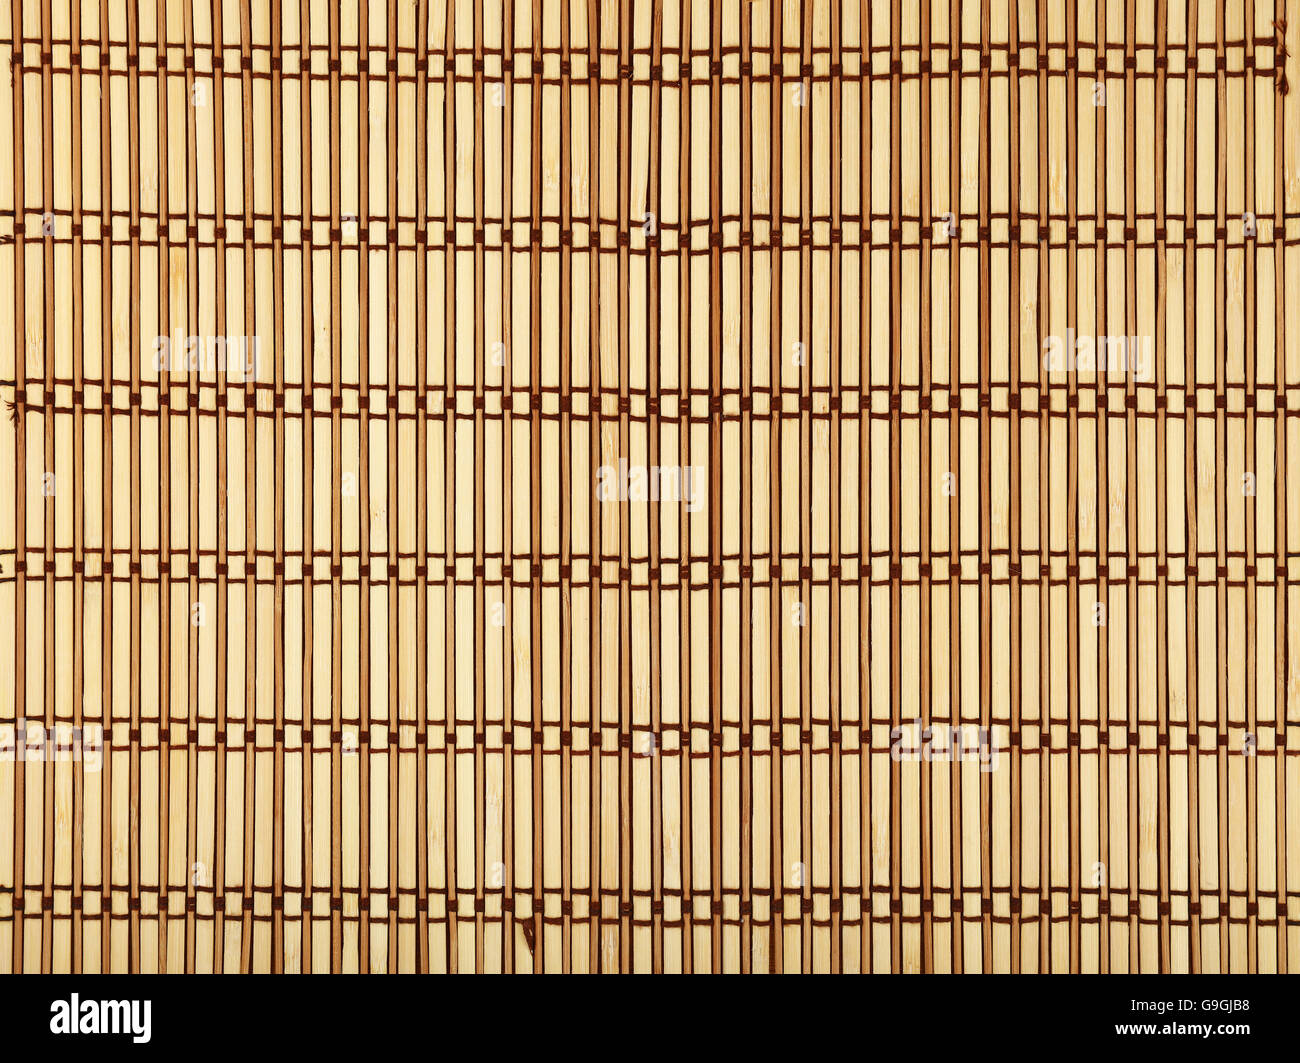 Beige und braun natürlichen hölzernen geflochtenem Bambus Matte Hintergrundtextur mit vertikalen Planken und dunkle horizontale Faden, Nahaufnahme Stockfoto